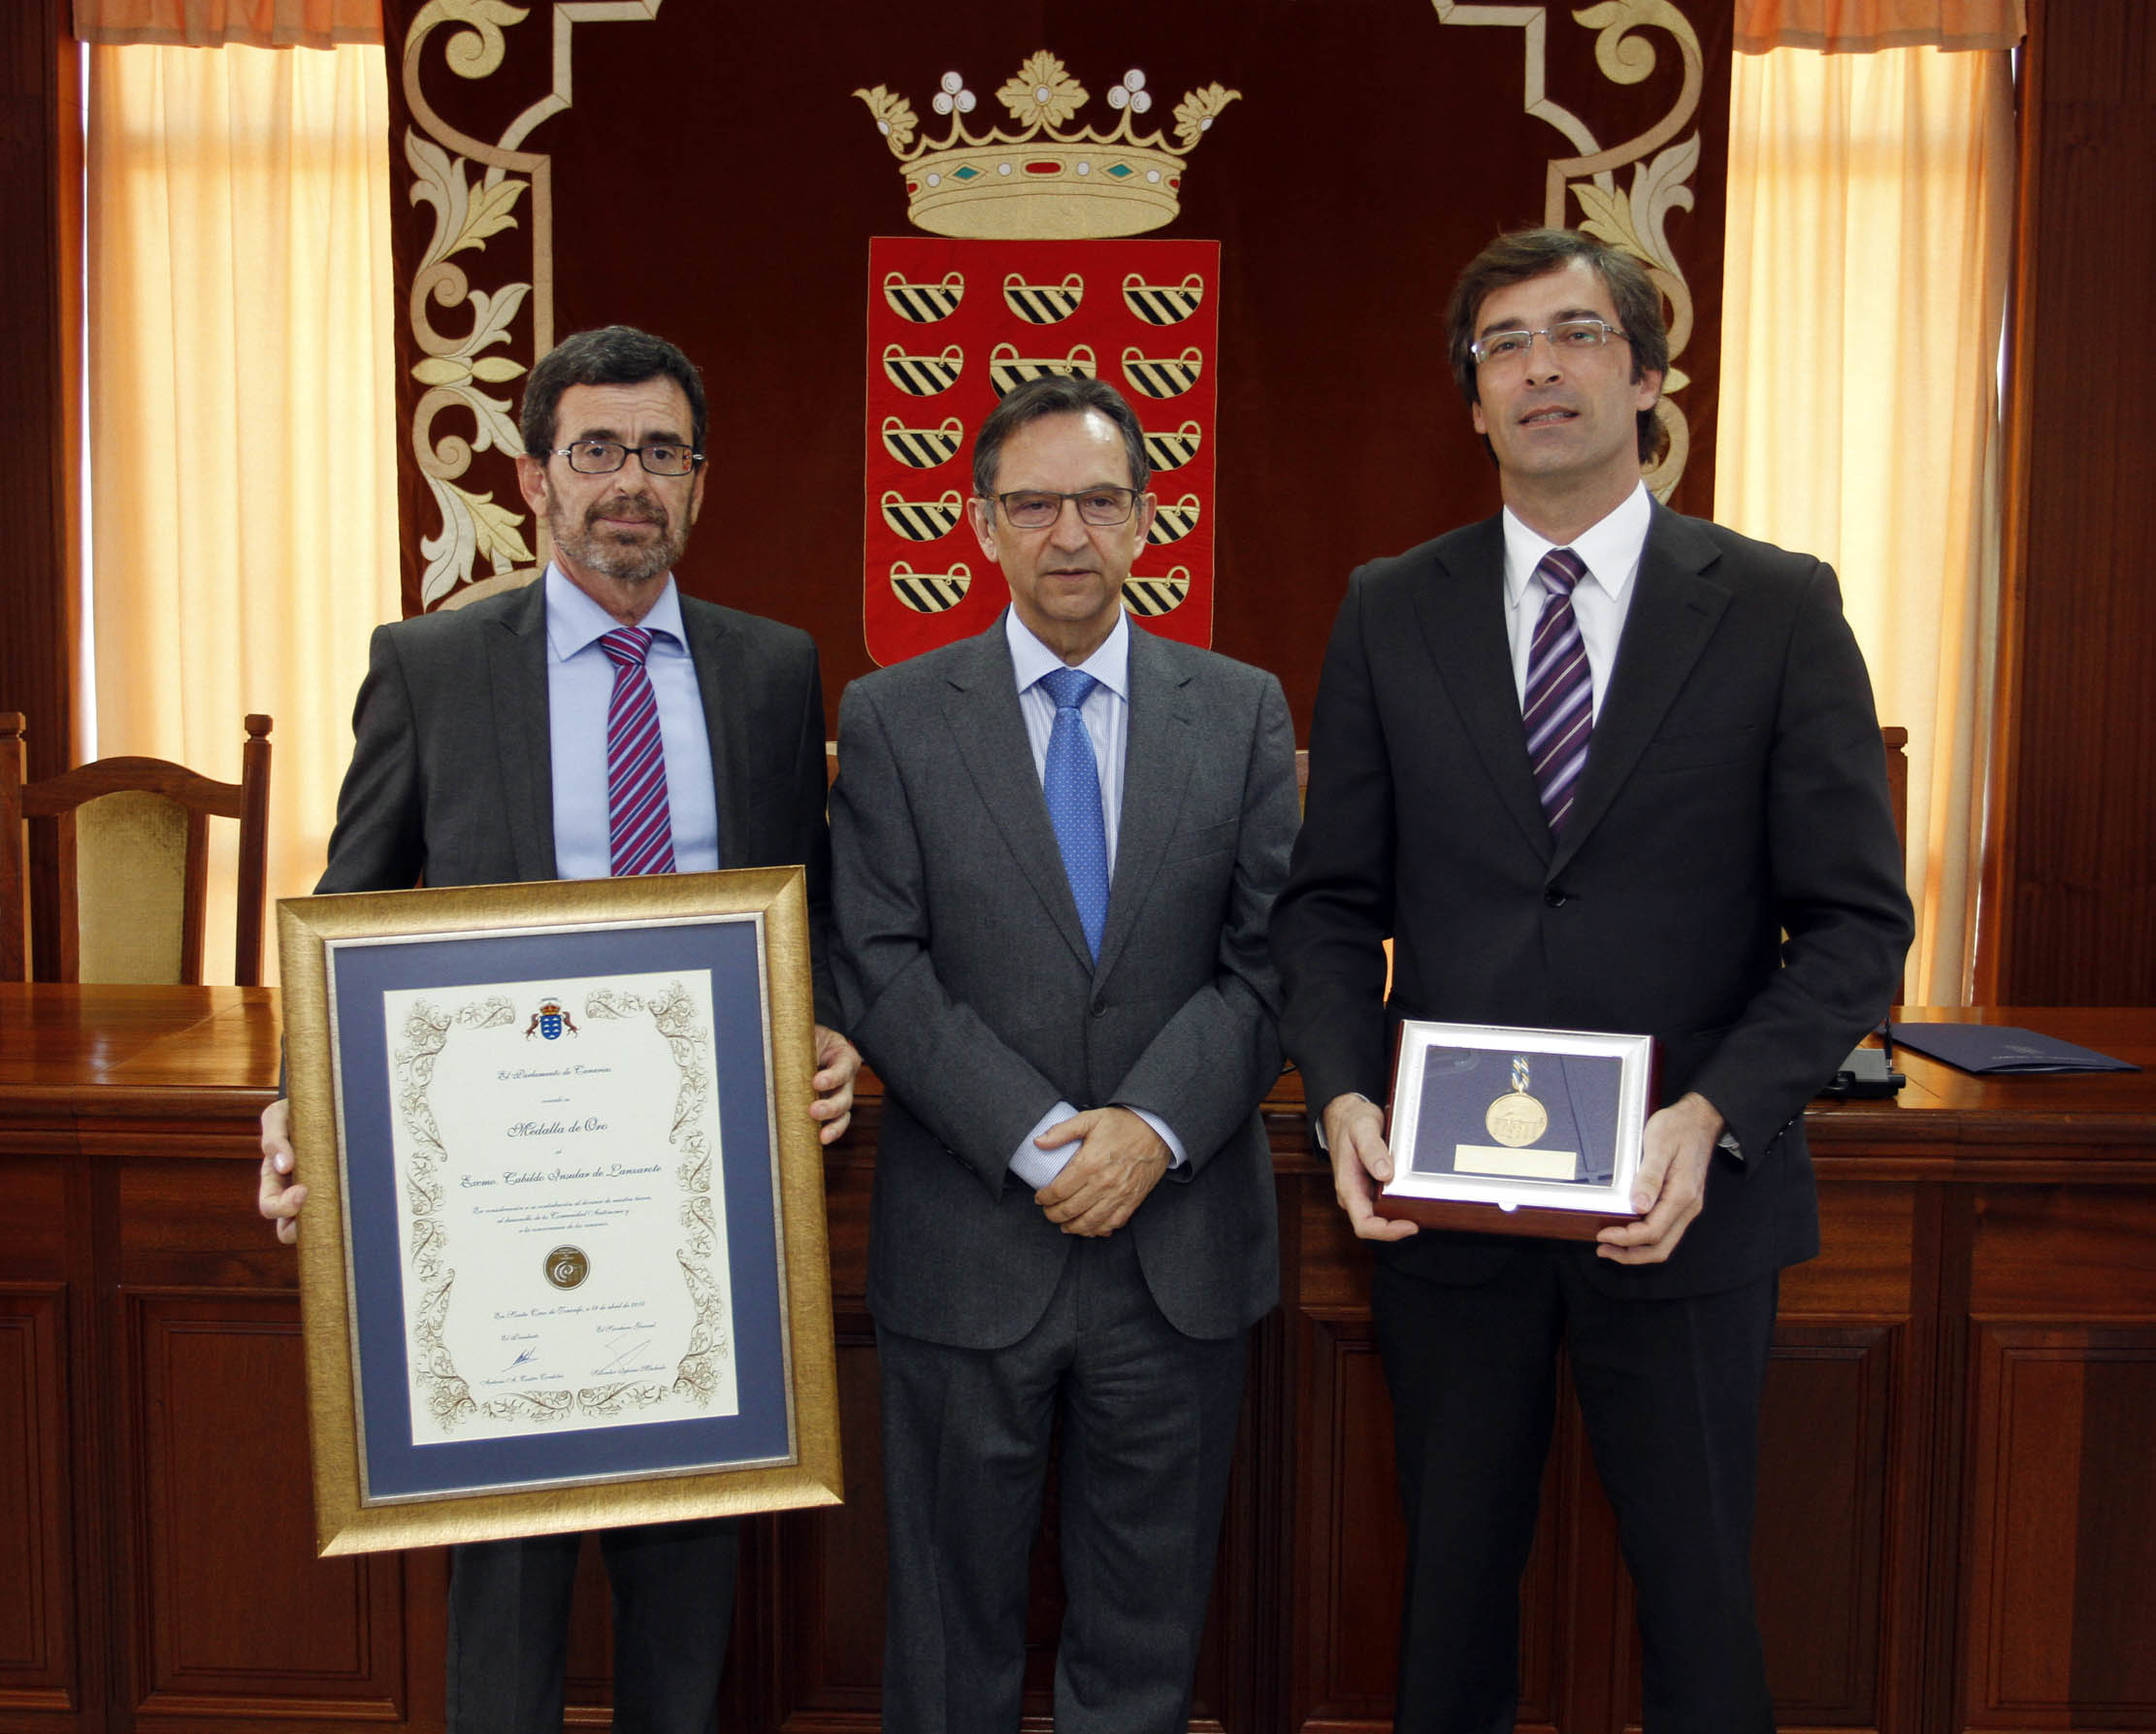 Entrega de la Medalla de oro del Parlamento al Cabildo de Lanzarote.